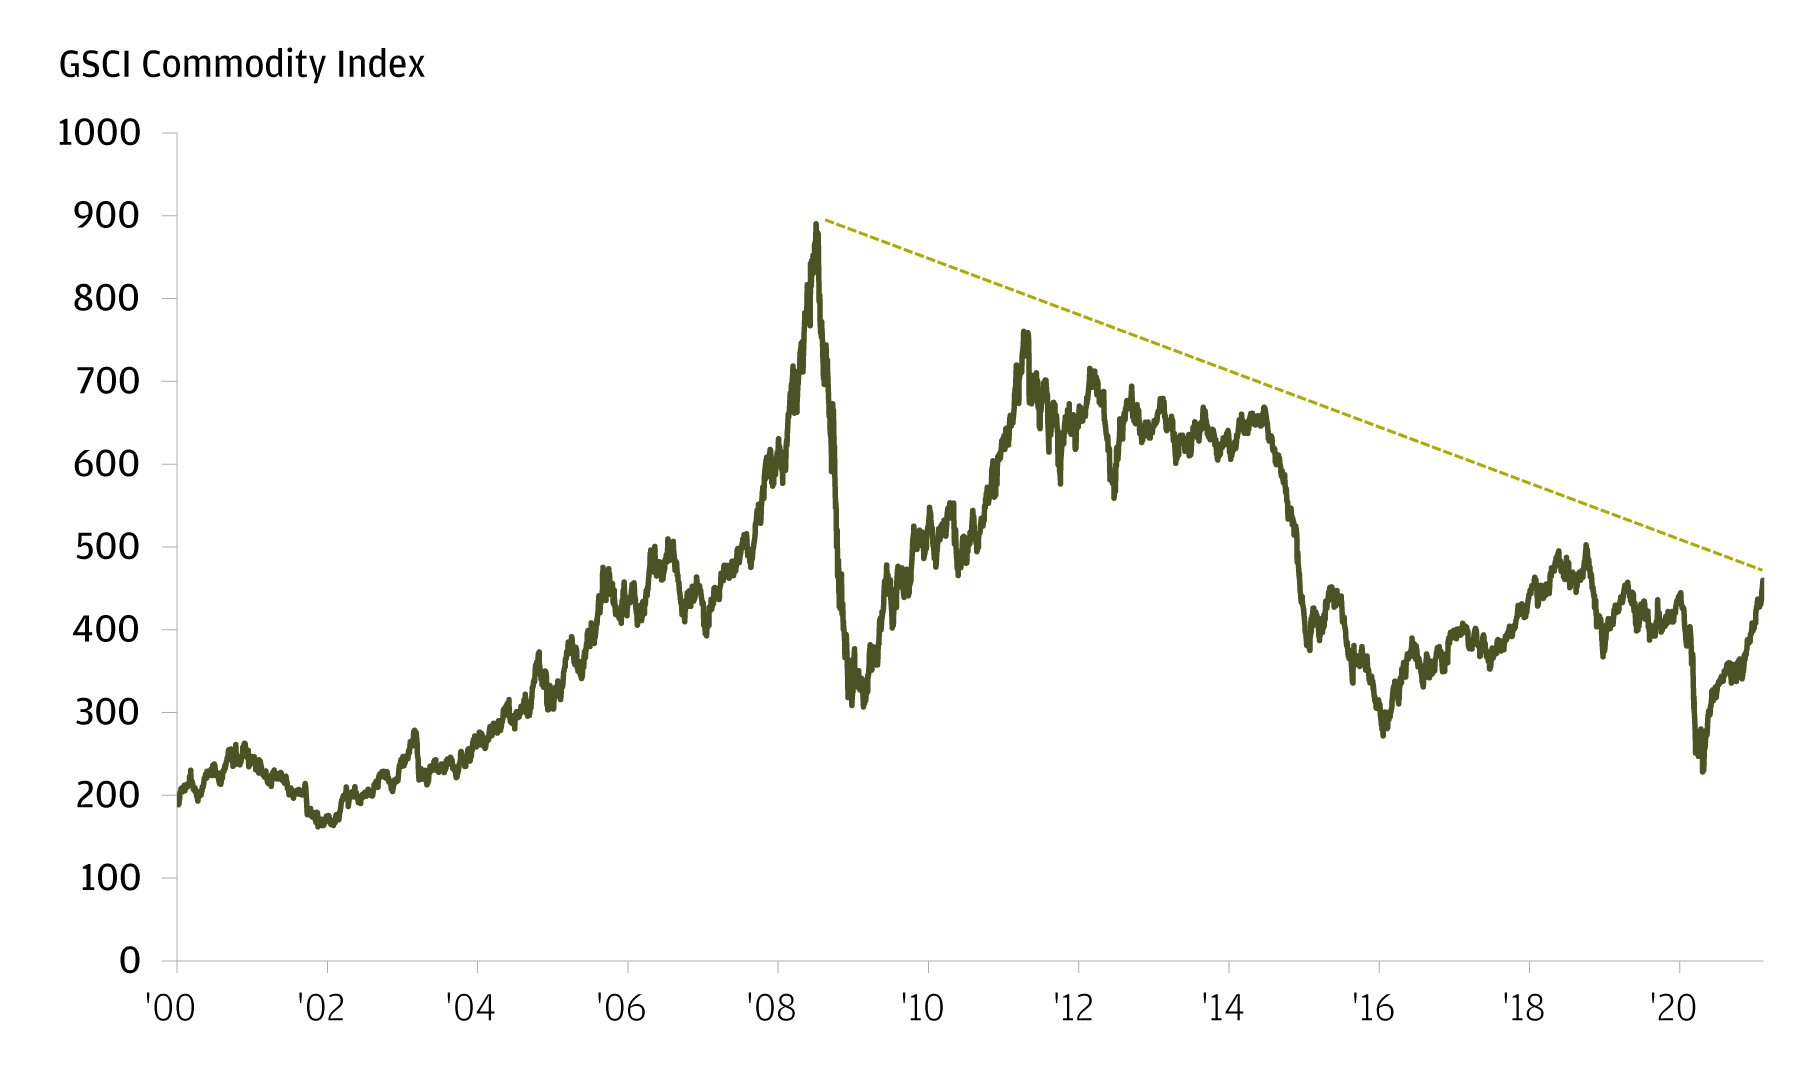 Die Grafik zeigt den GSCI Commodities Index vom 31. Dezember 1999 bis zum 10. Februar 2021. Das aktuelle Niveau des Index (Stand: 10. Februar 2021) liegt bei 459,49 und damit deutlich unter dem Hoch von 890,29 am 3. Juli 2008.